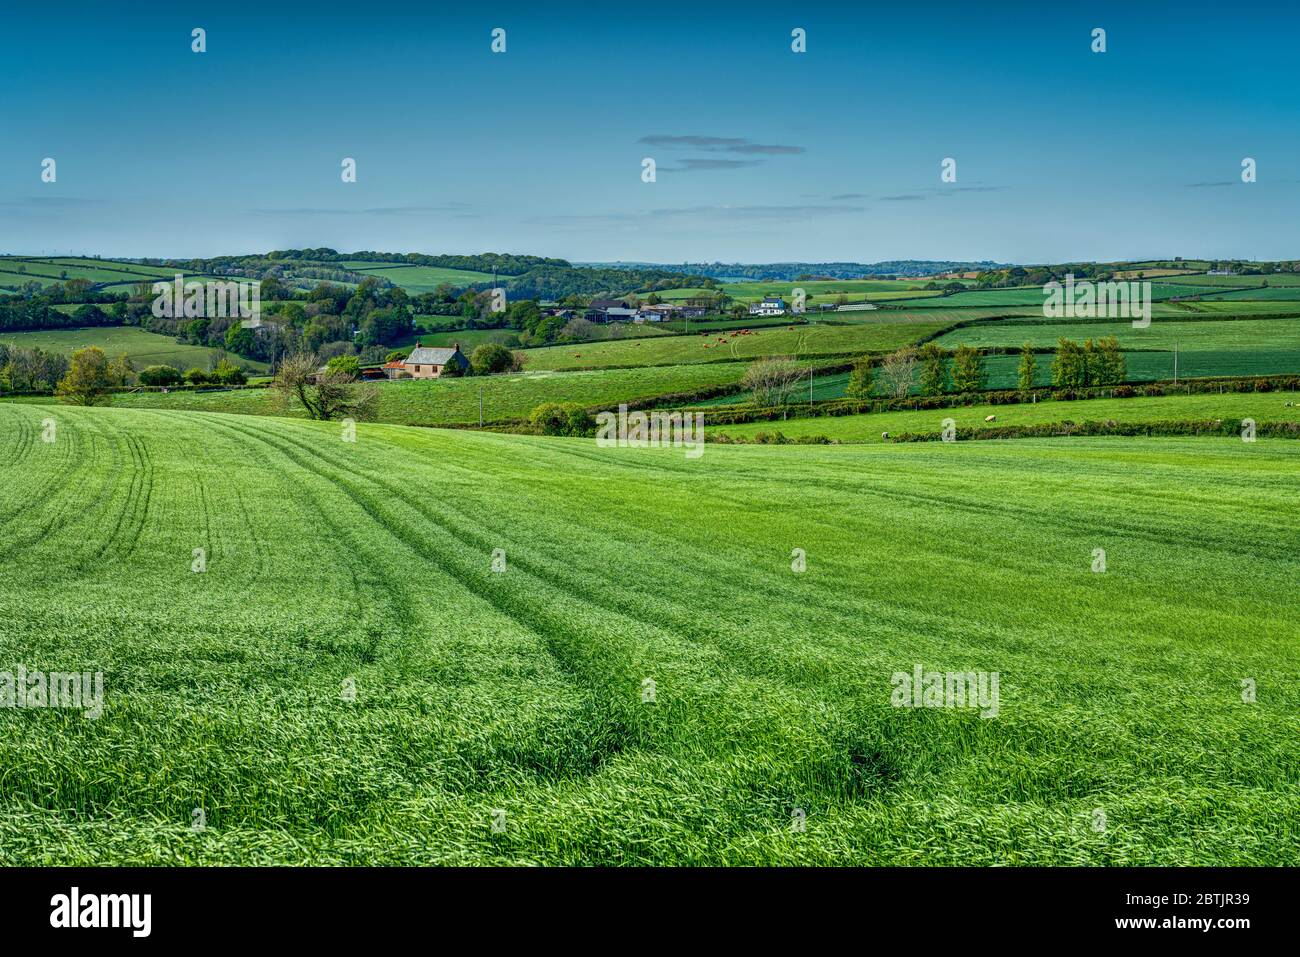 Eine sehr grüne Frühlingsgerste mit großen Traktorlinien, die Ihr Auge in ein schönes Patchwork von kornischen Bauernhöfen in sanft hügeliger Landschaft hineinzieht. Stockfoto